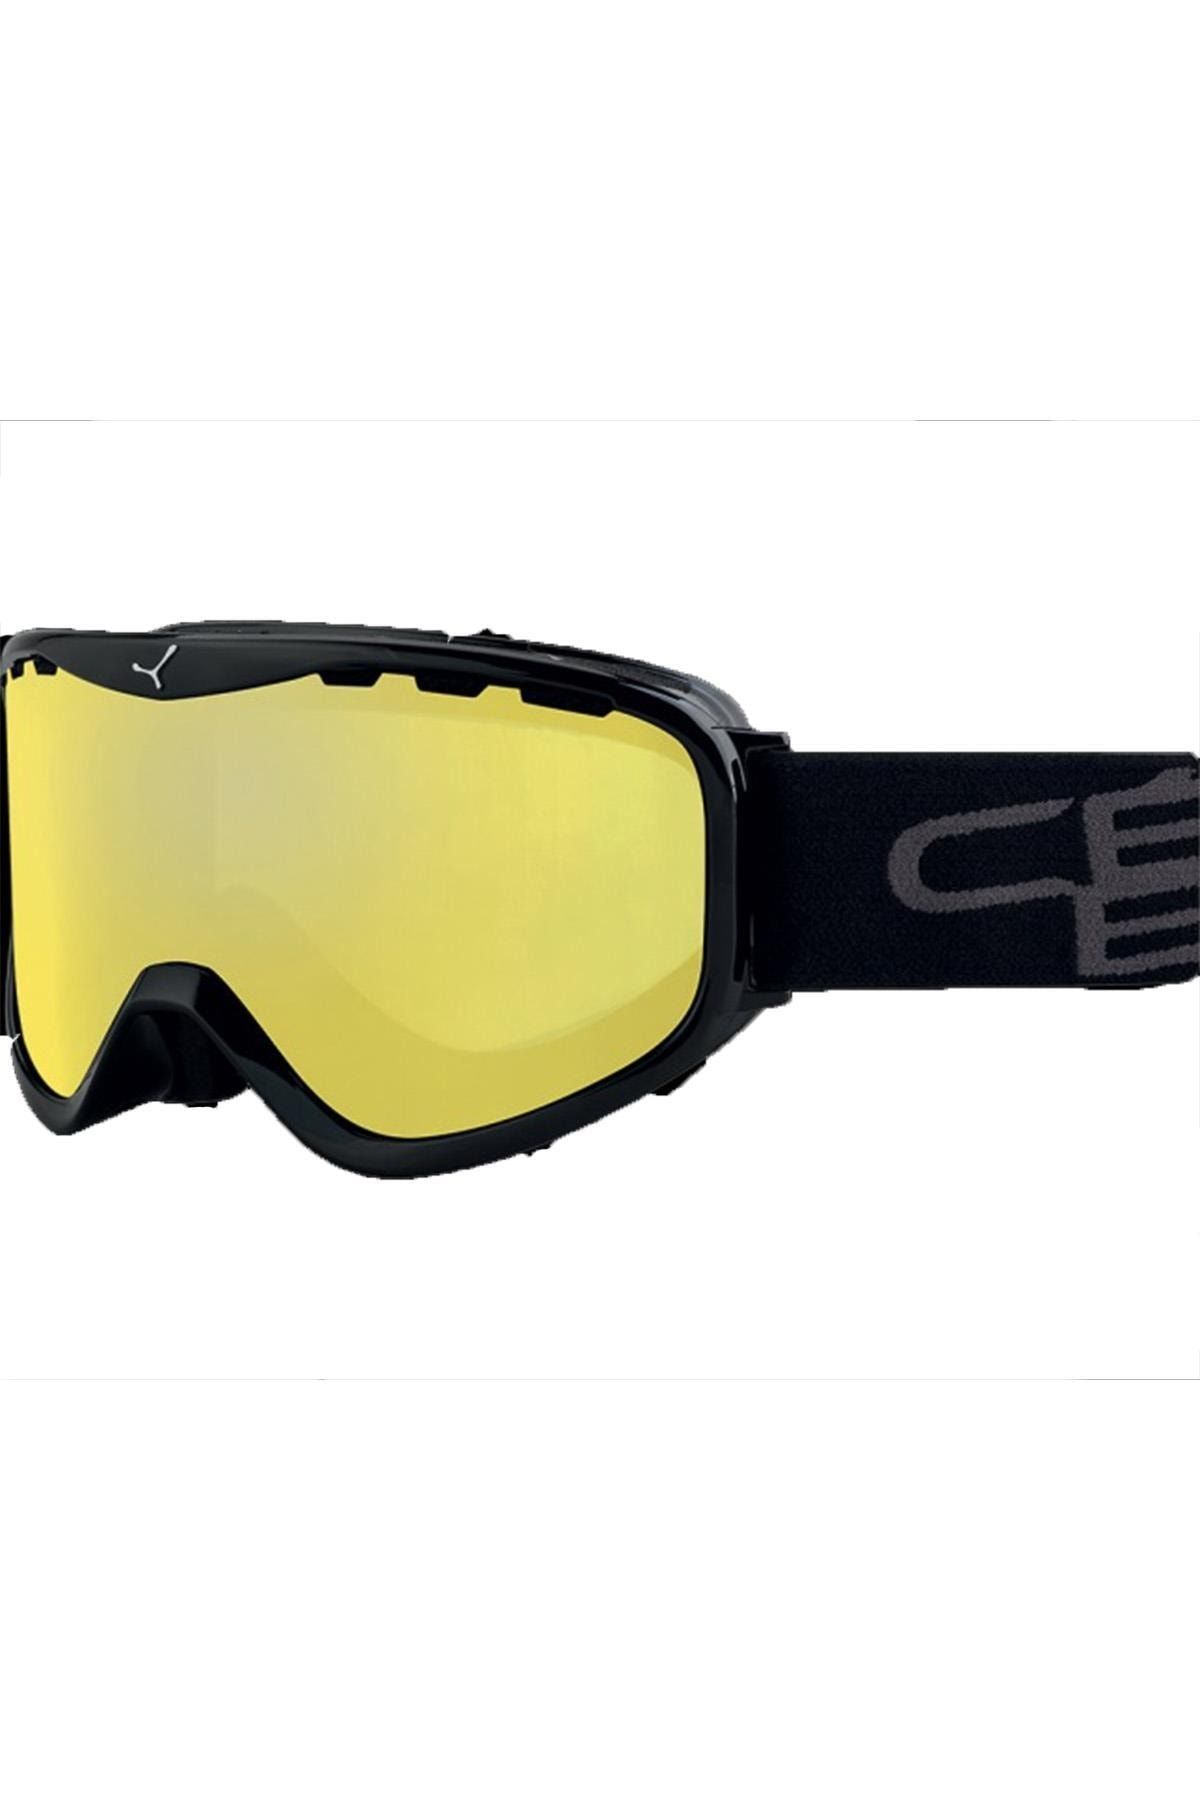 Cebe Rıdge_otg Kayak Gözlüğü Otg Cbg182